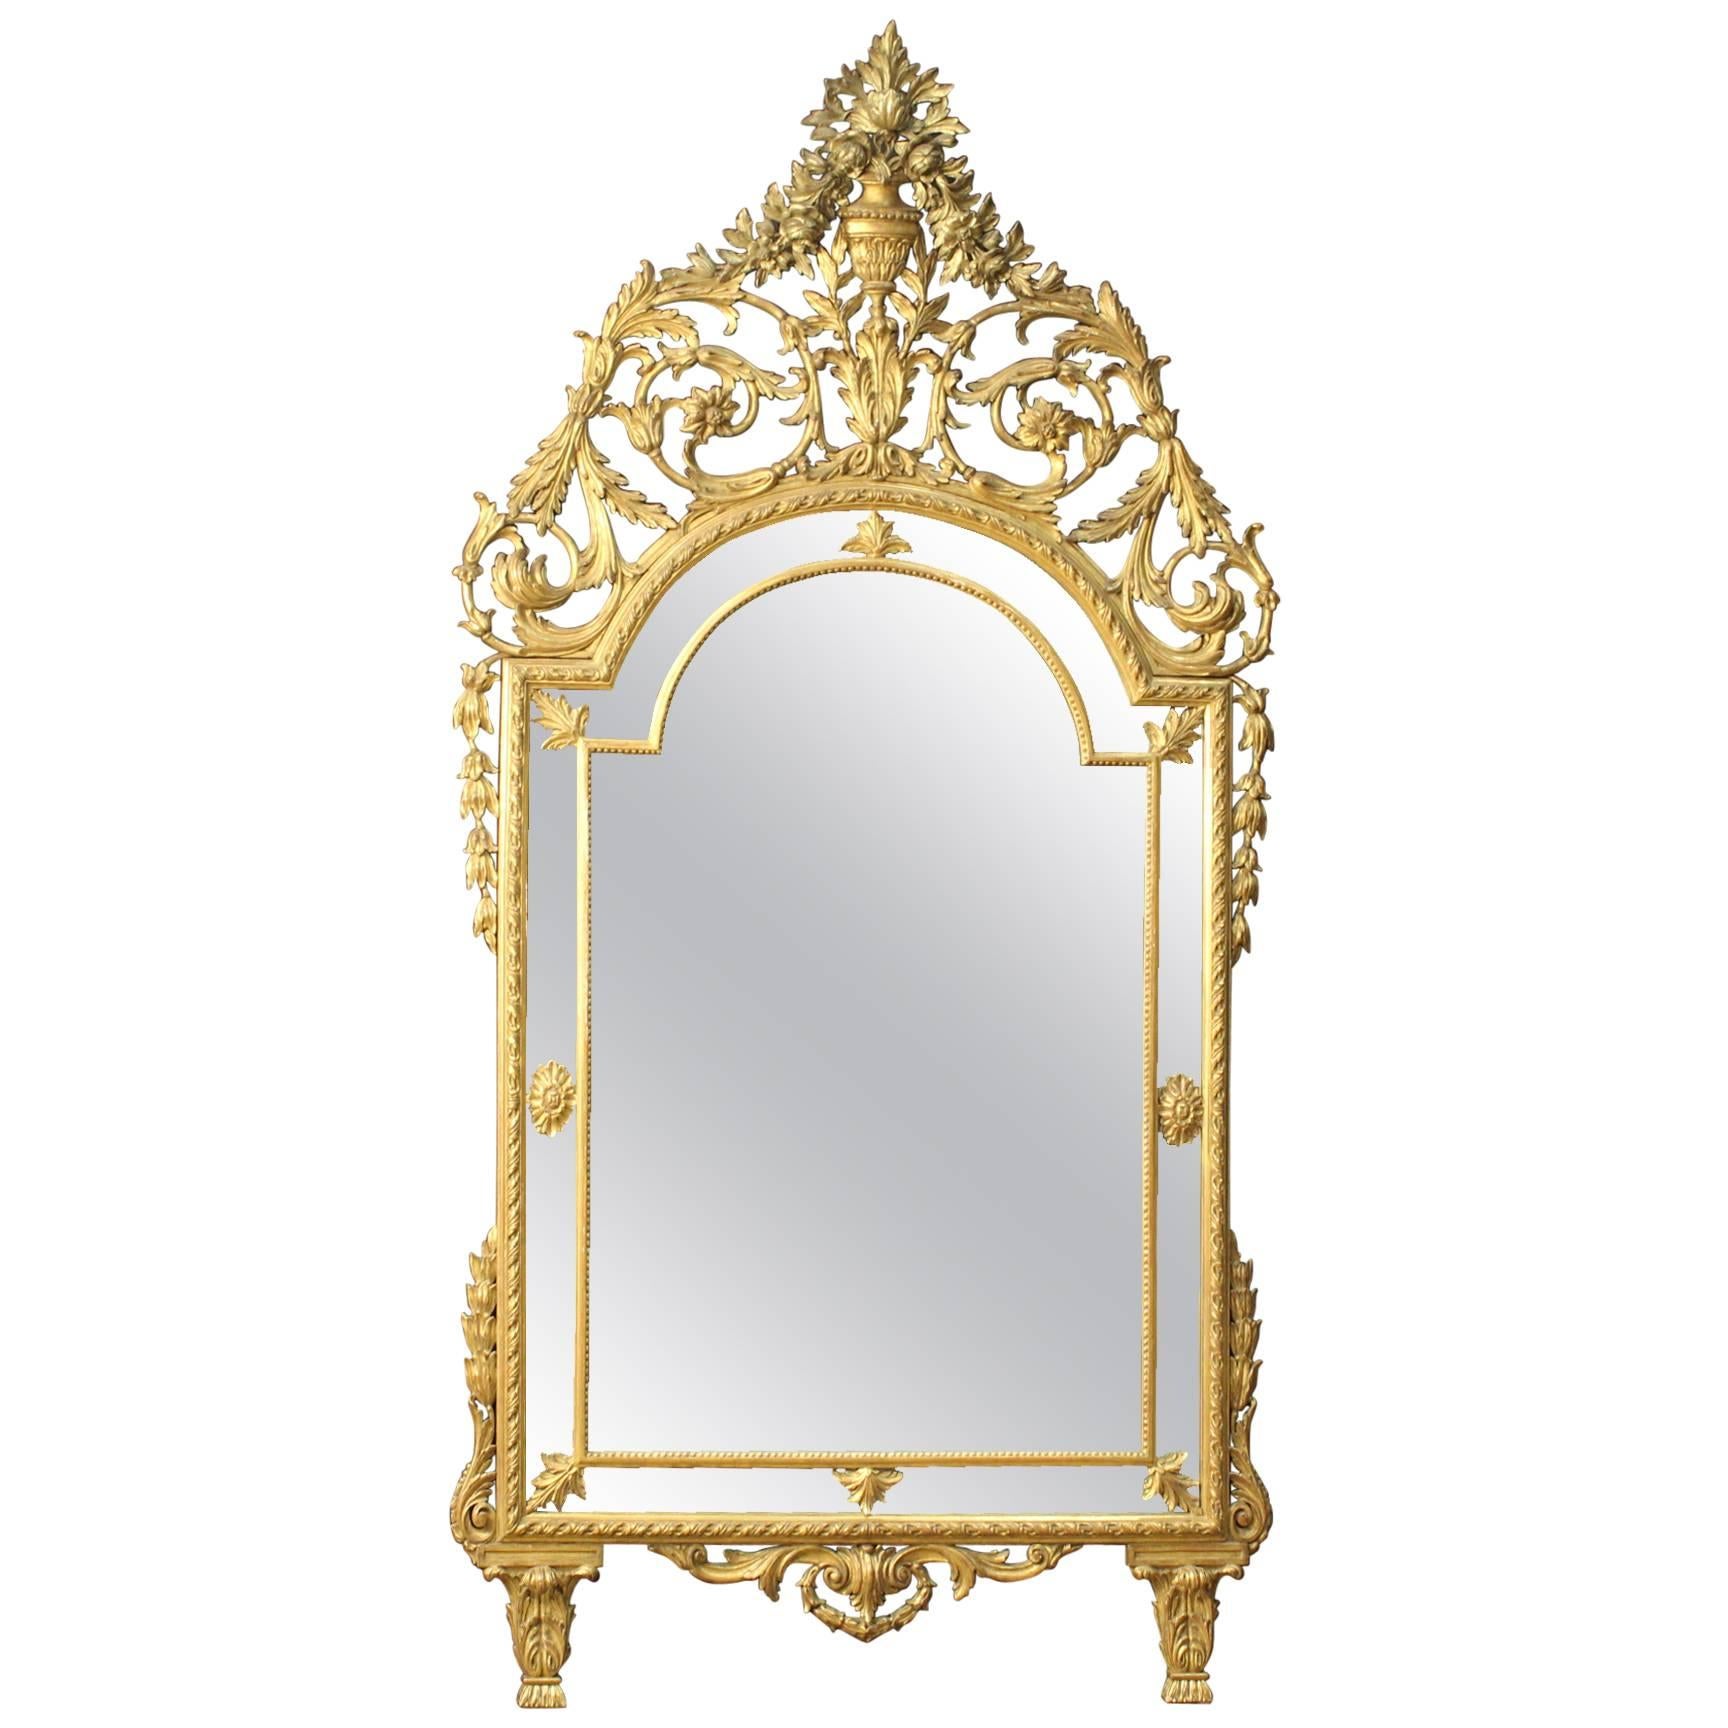 20th Century Italian Golden Mirror in Louis XVI Style